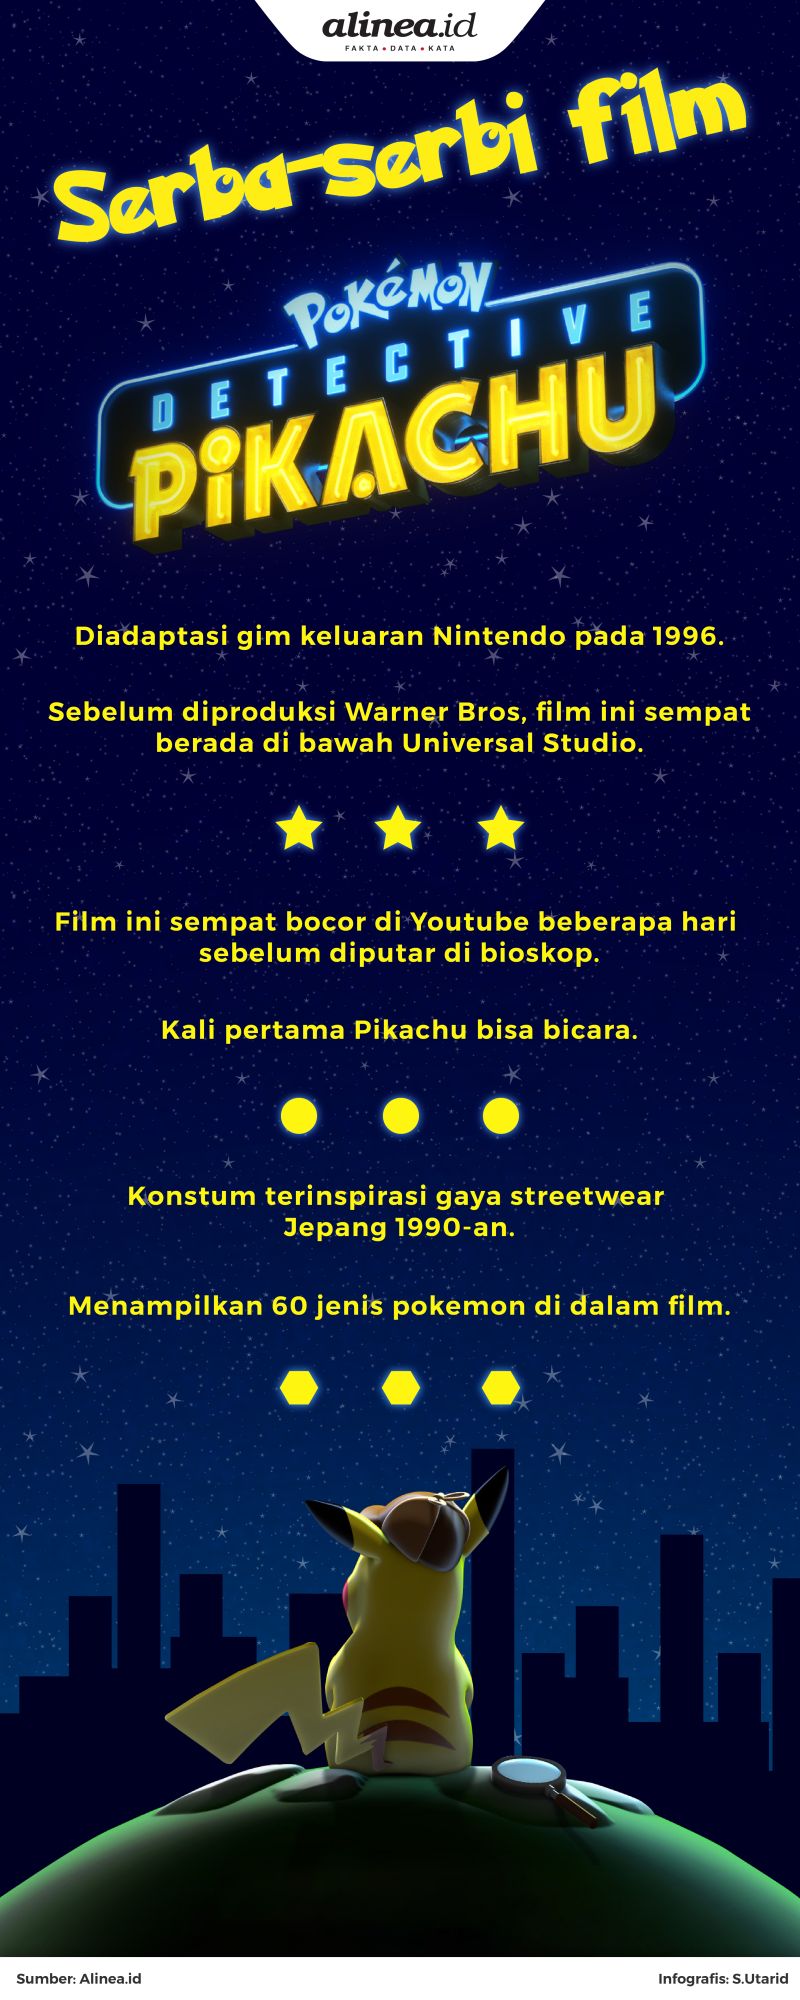 Film ini diadaptasi dari video gim keluaran Nintendo.